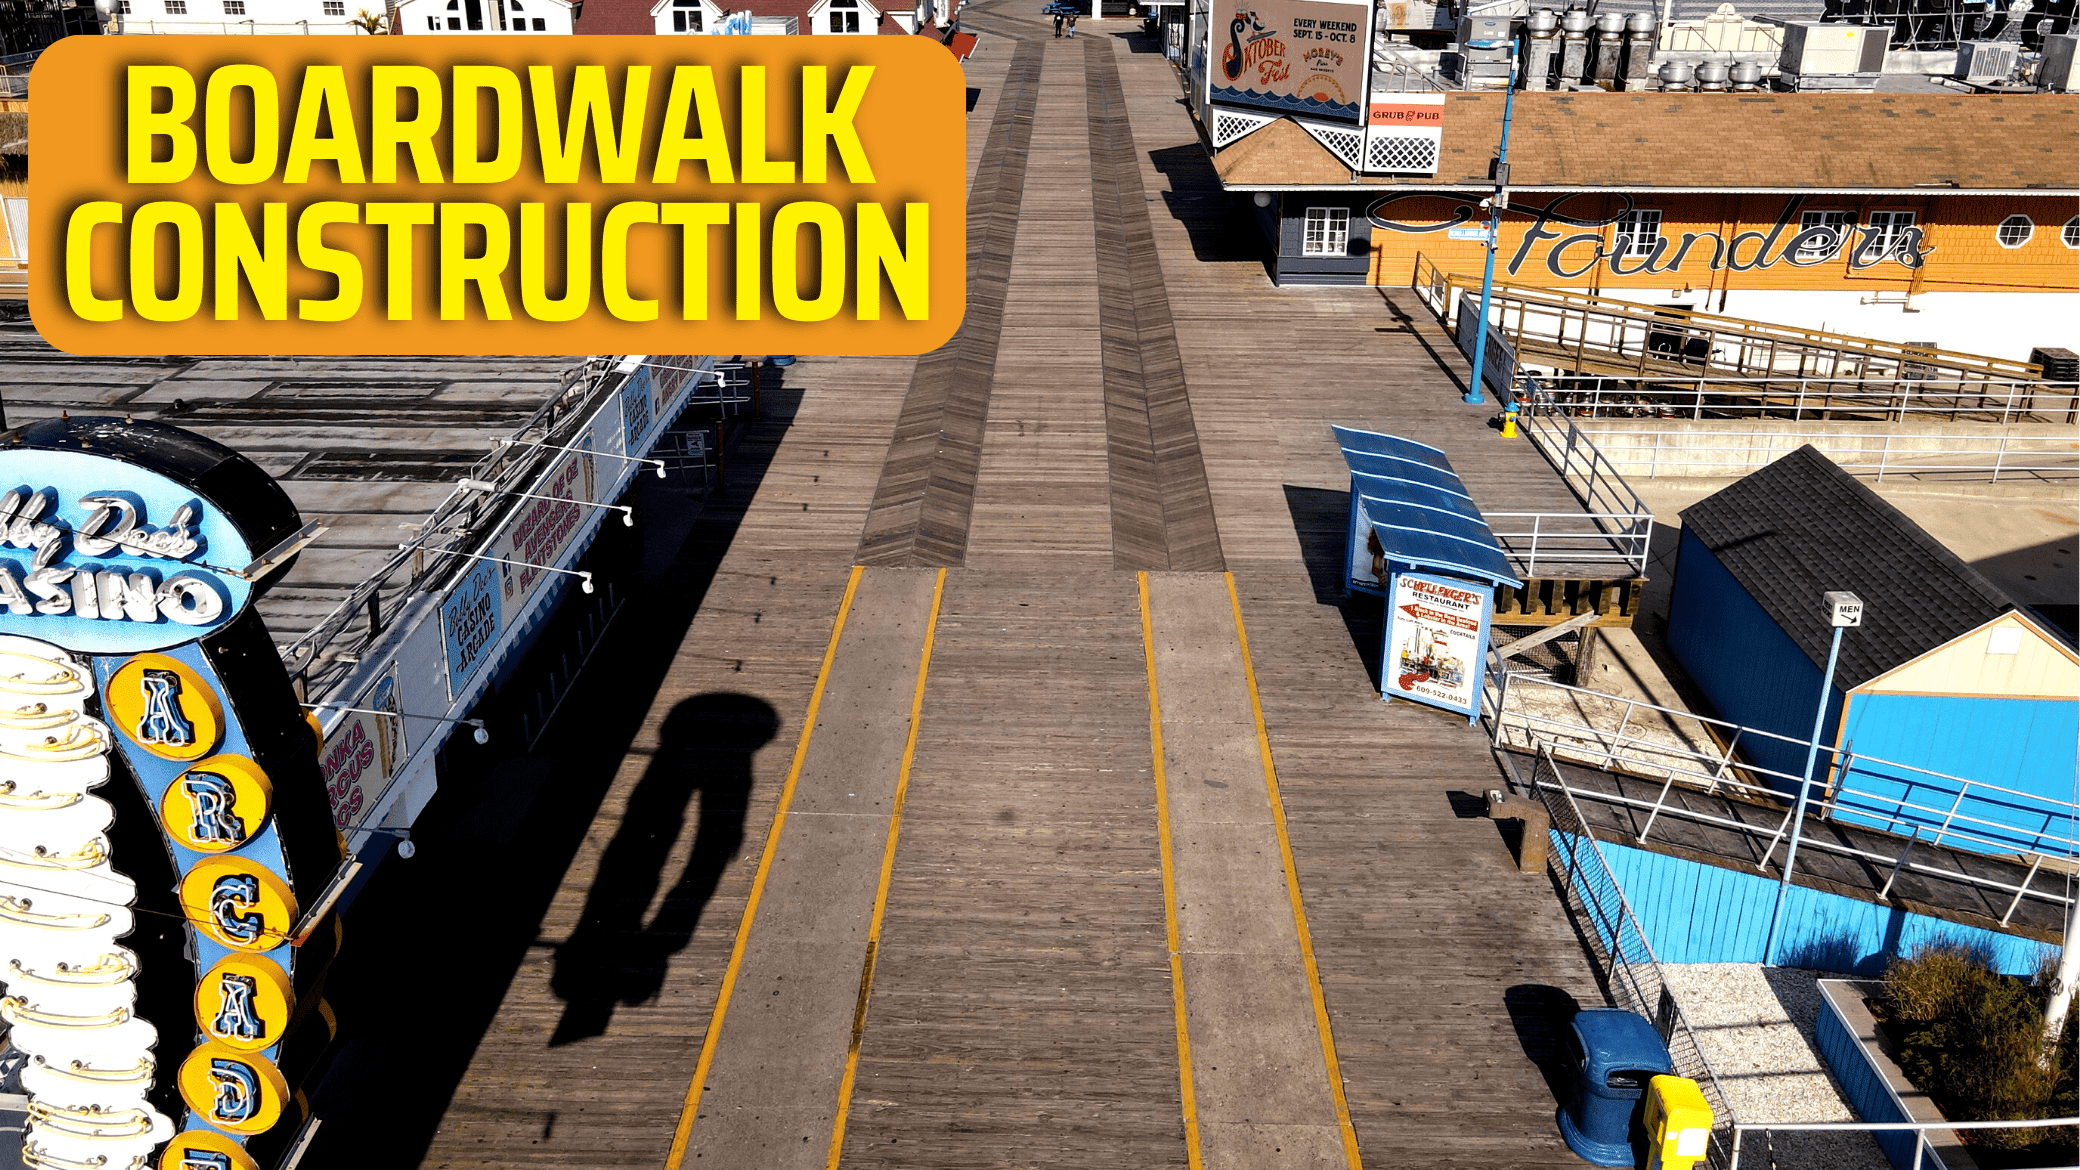 Wildwood Boardwalk Reconstruction - Phase 3,4,5 Explained